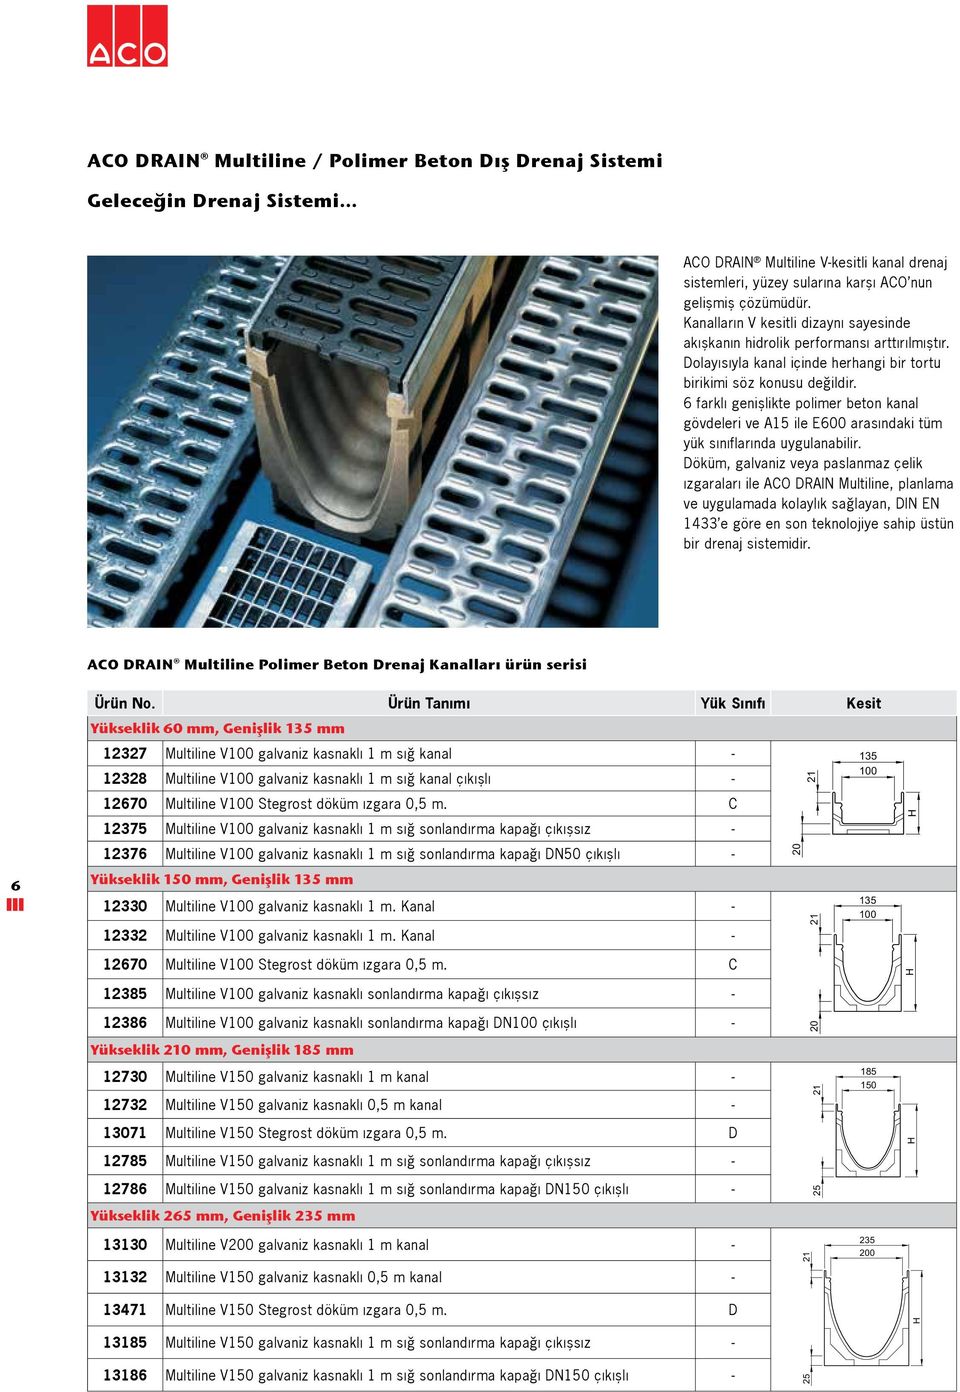 6 farklı genişlikte polimer beton kanal gövdeleri ve A15 ile E600 arasındaki tüm yük sınıflarında uygulanabilir.